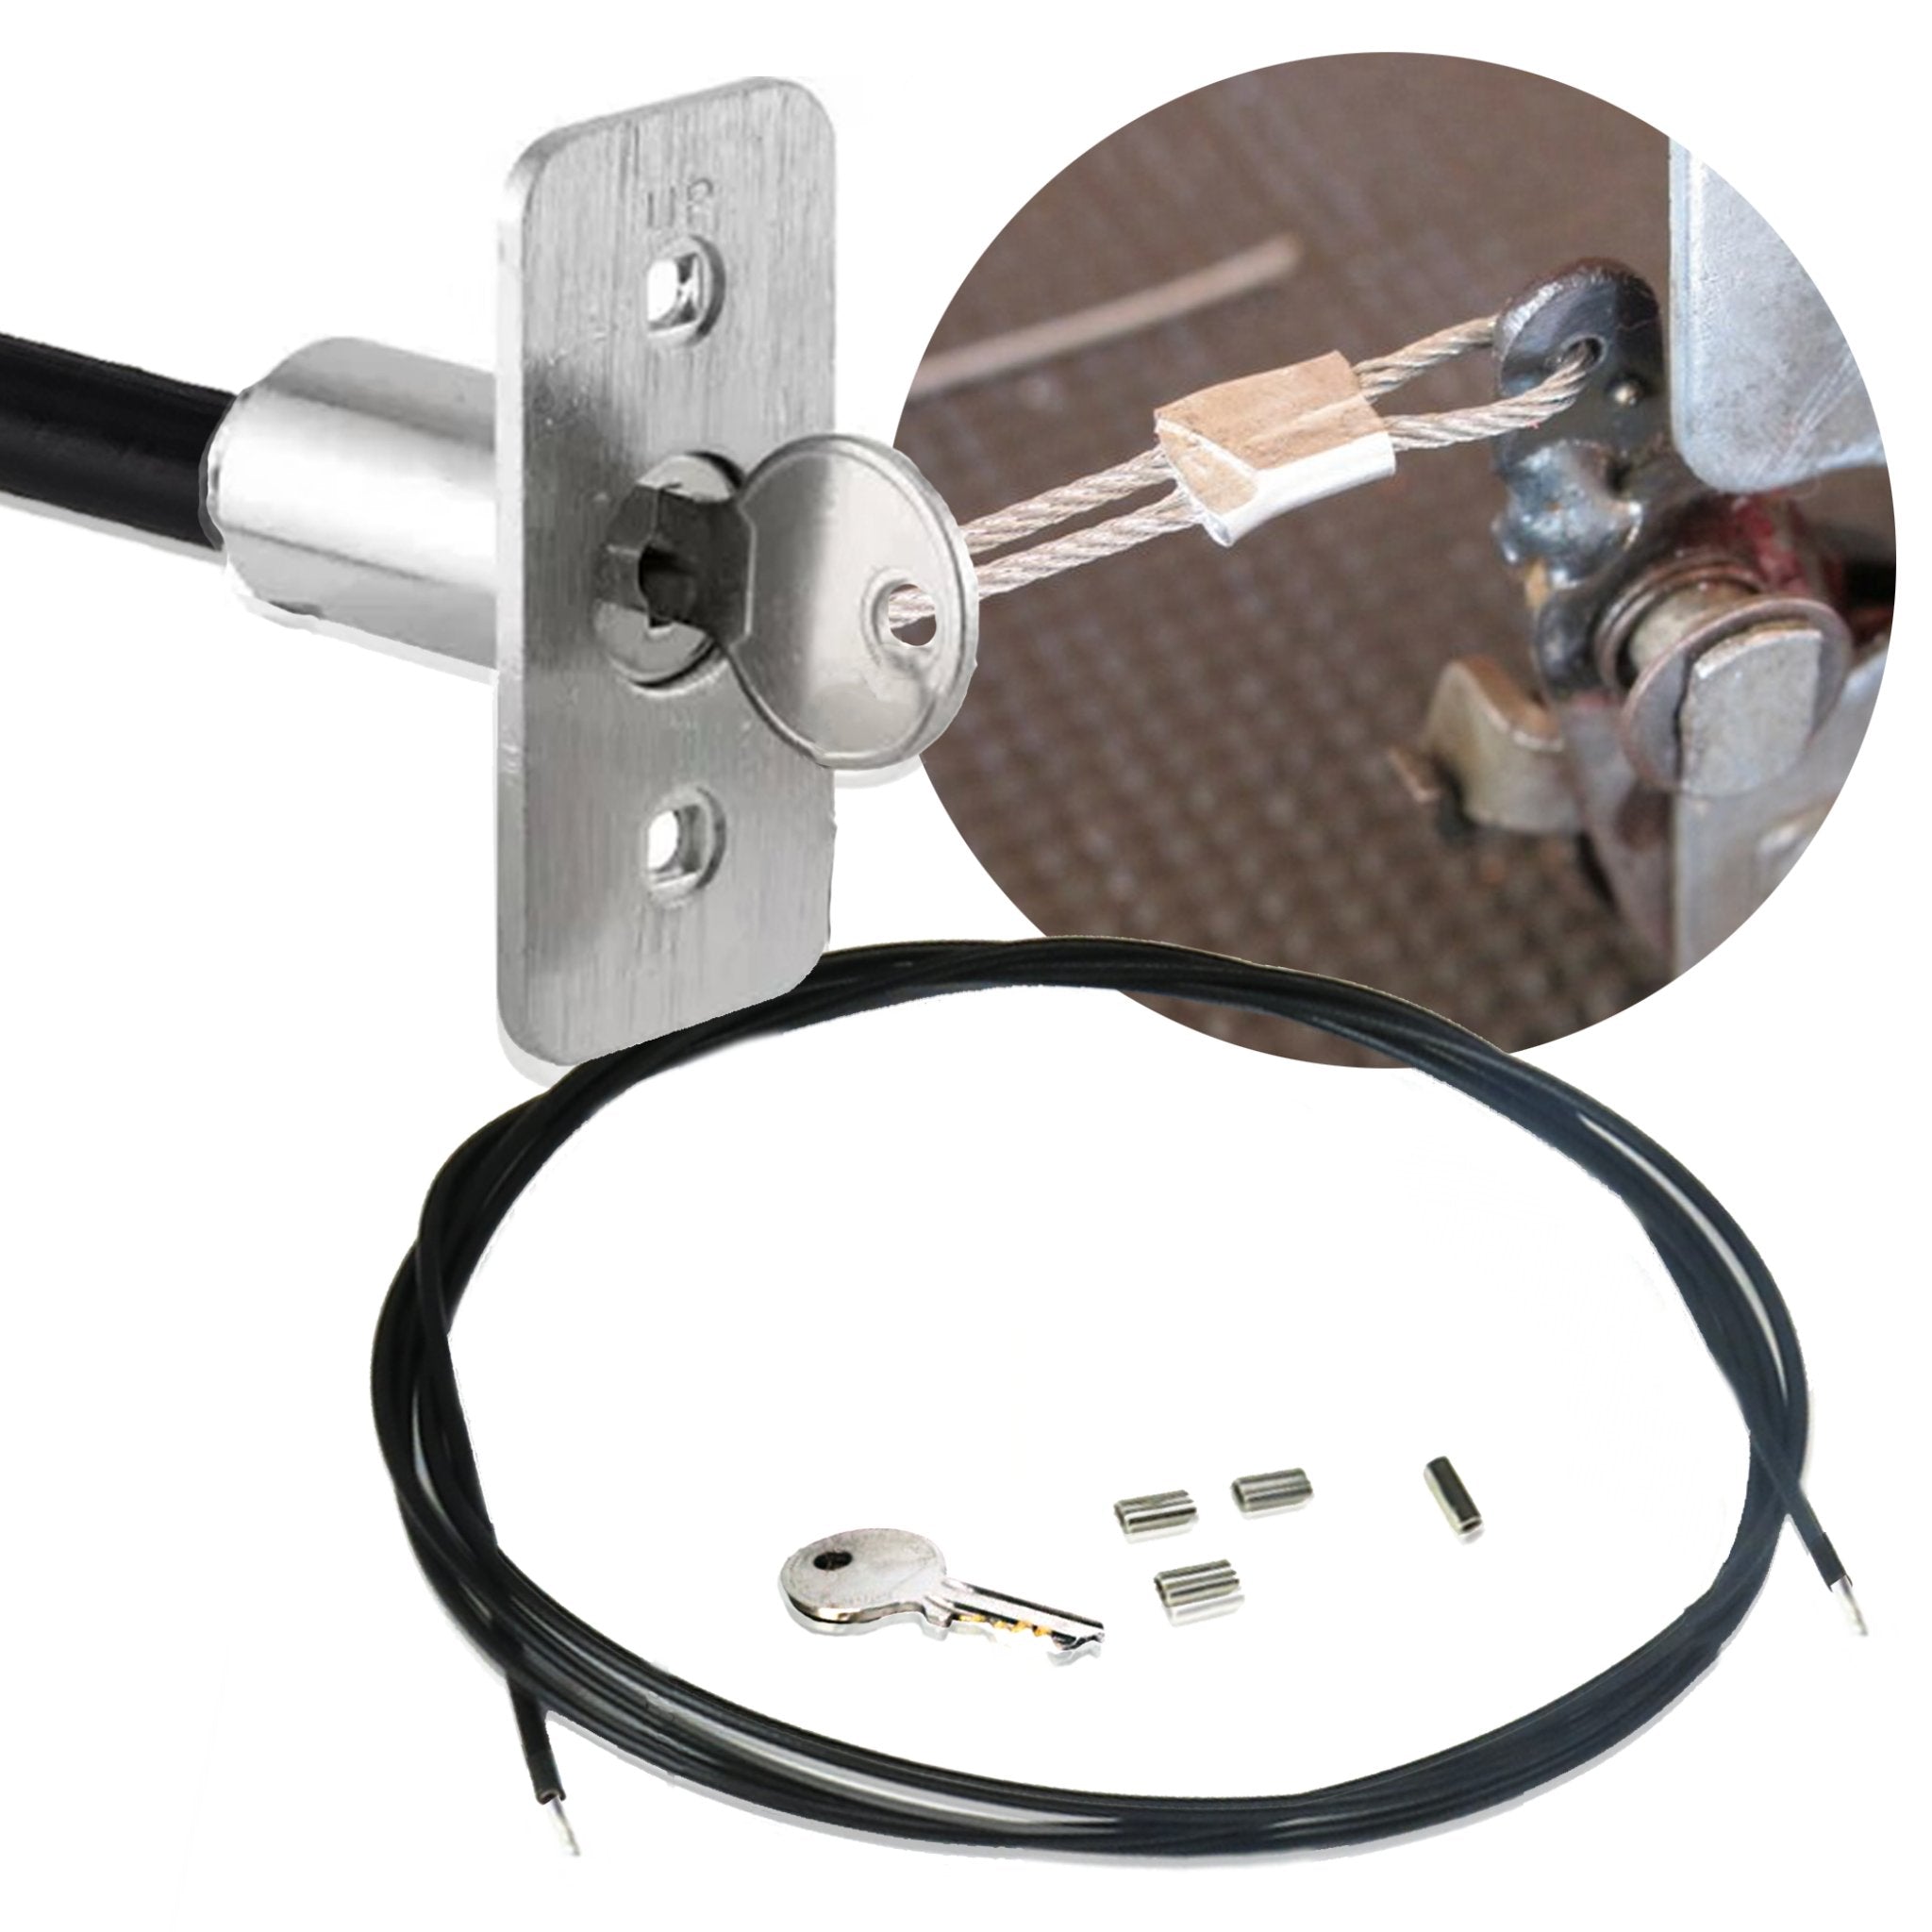 Kit de liberación de Cable de emergencia para pestillo de coche, cerradura de llave, desconexión de puerta de garaje Universal